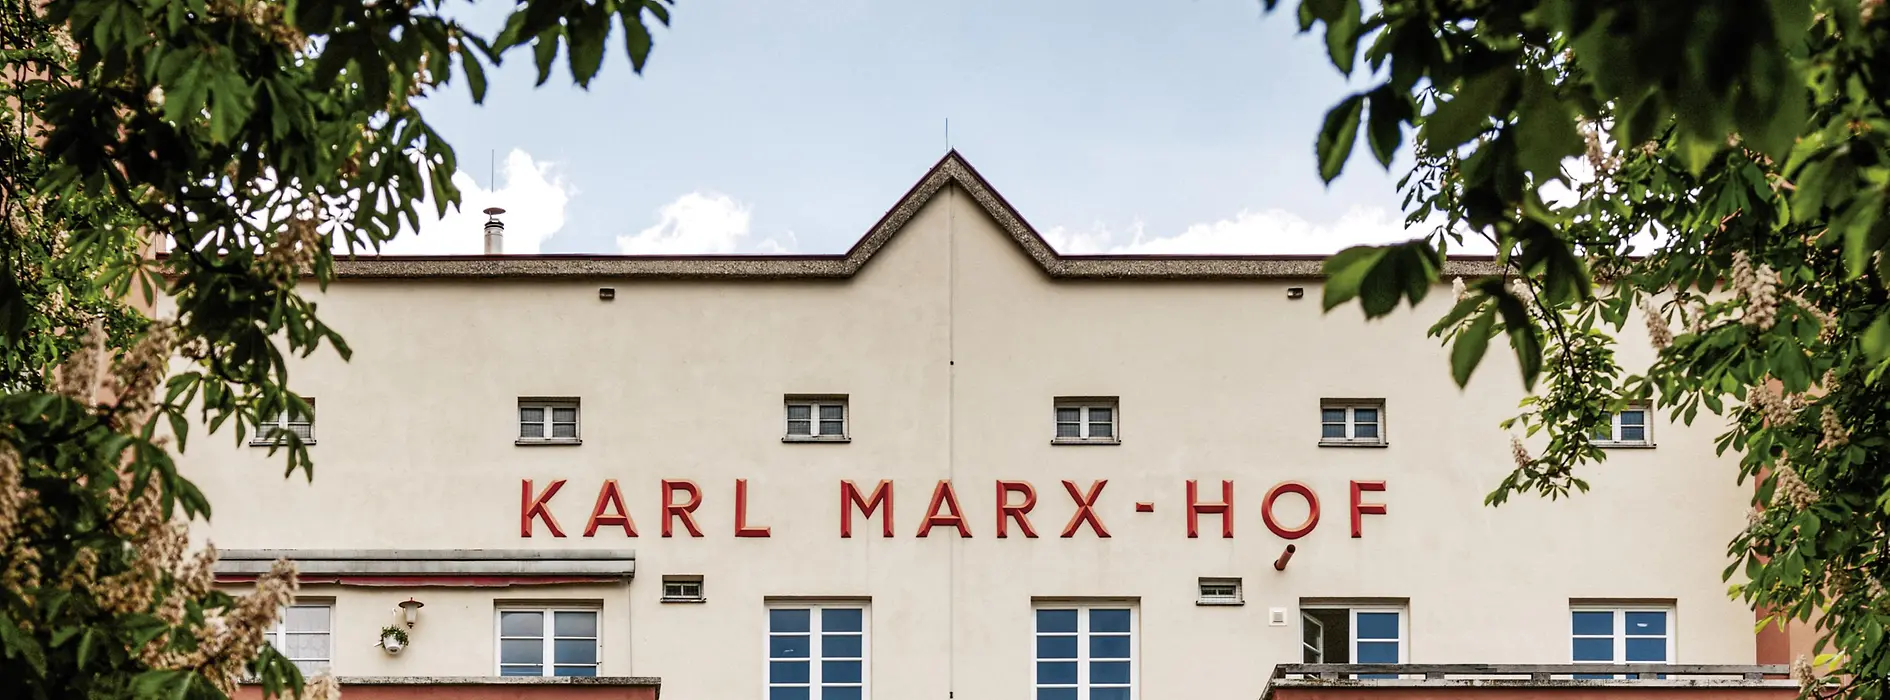 Complexe de logements sociaux Karl-Marx-Hof, extérieur